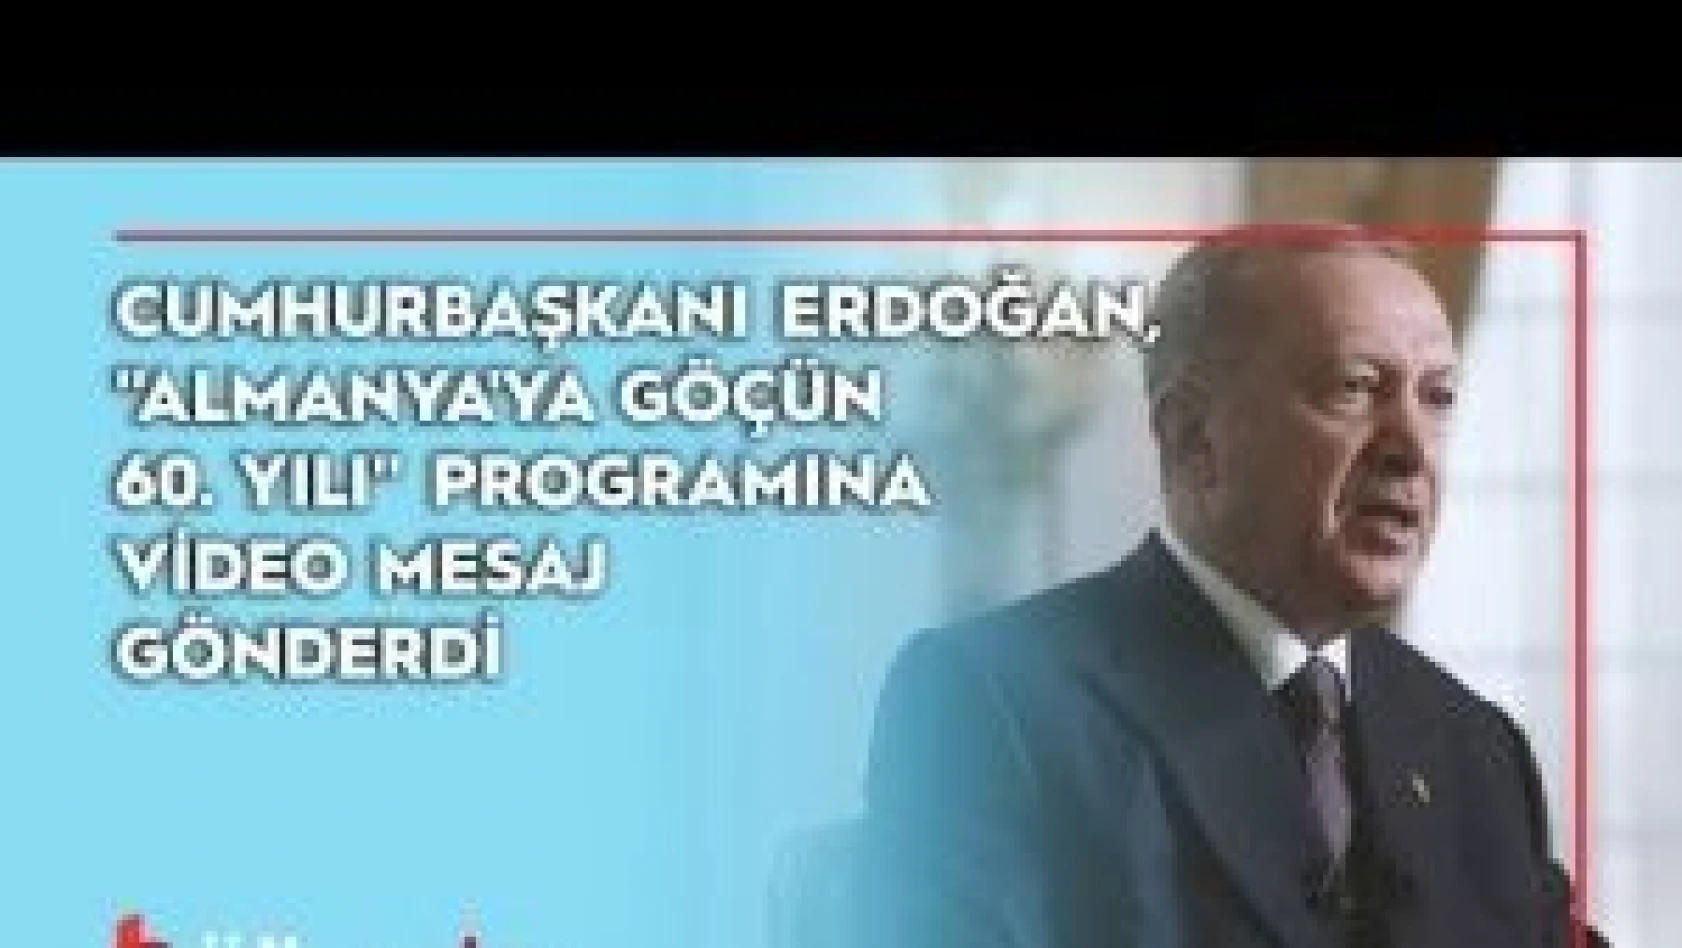 Cumhurbaşkanı Erdoğan, &quotAlmanya'ya Göçün 60. Yılı" programına video mesaj gönderdi